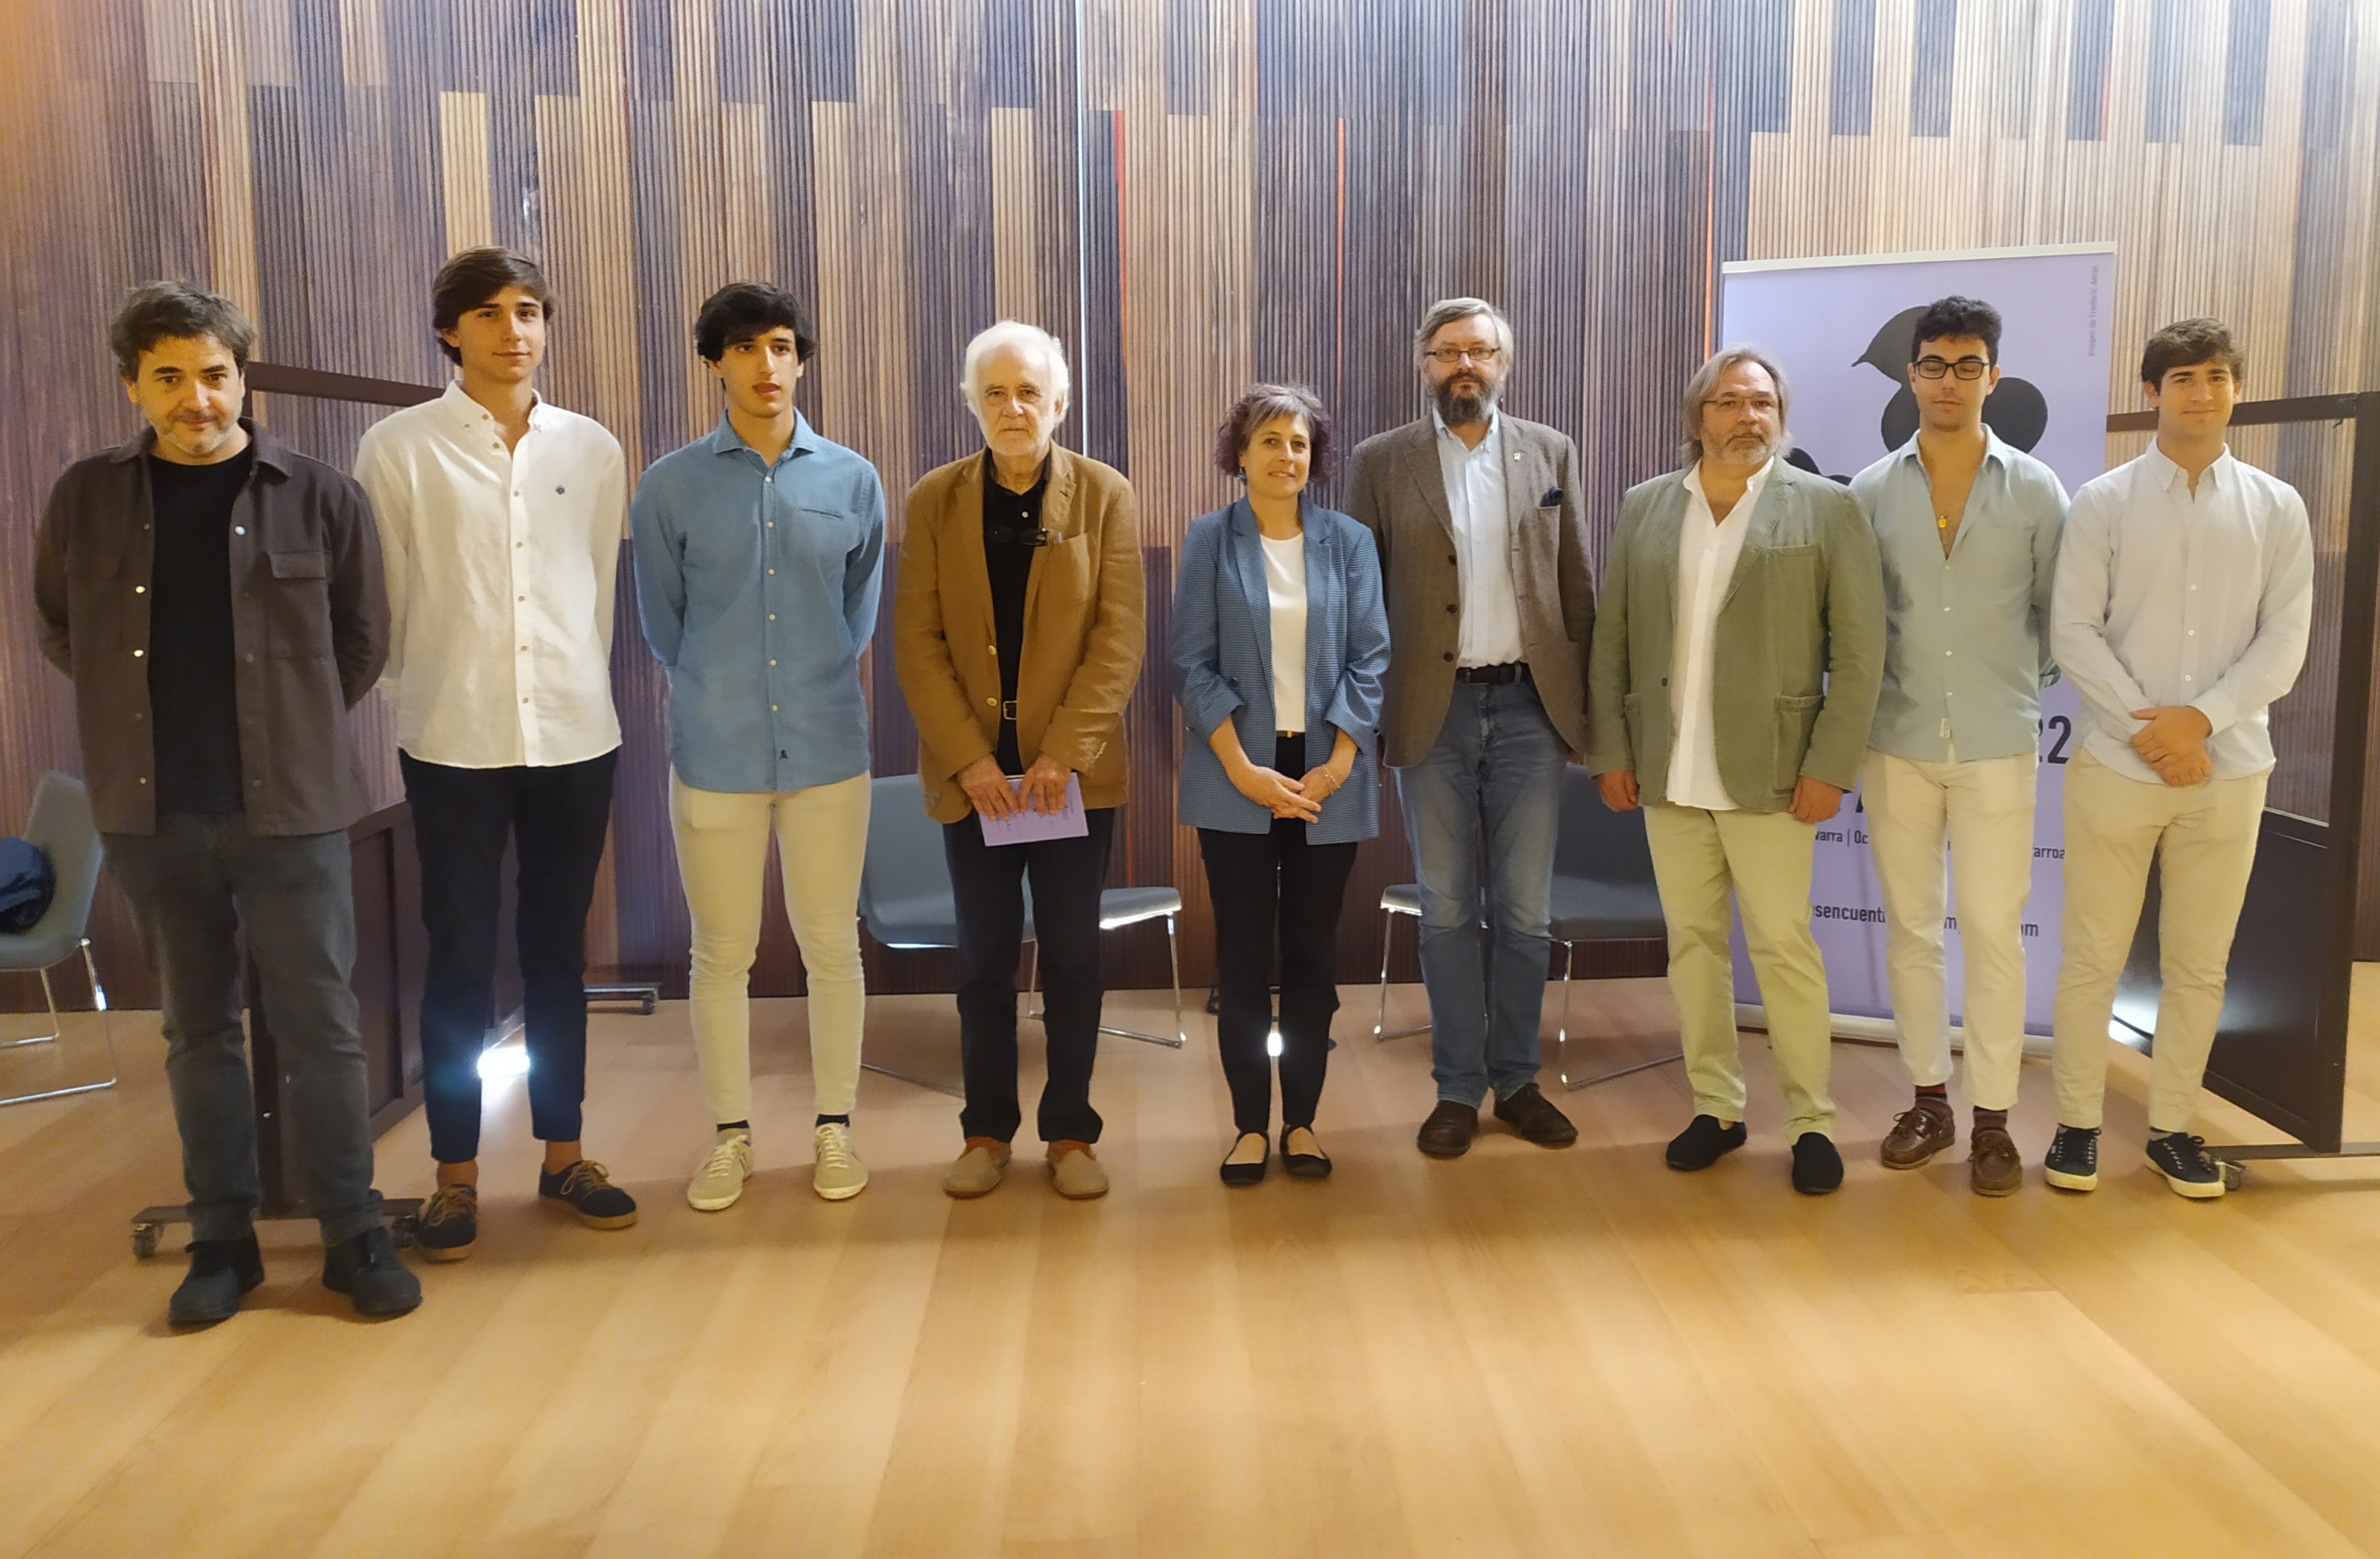 La consejera Esnaola con el comisario Ramón Andrés, los cineastas Viktor 
Kossakovsky y Sergey Loznitsa, el artista Xabier Erkizia y alumnos de la 
Escuela de Arquitectura.